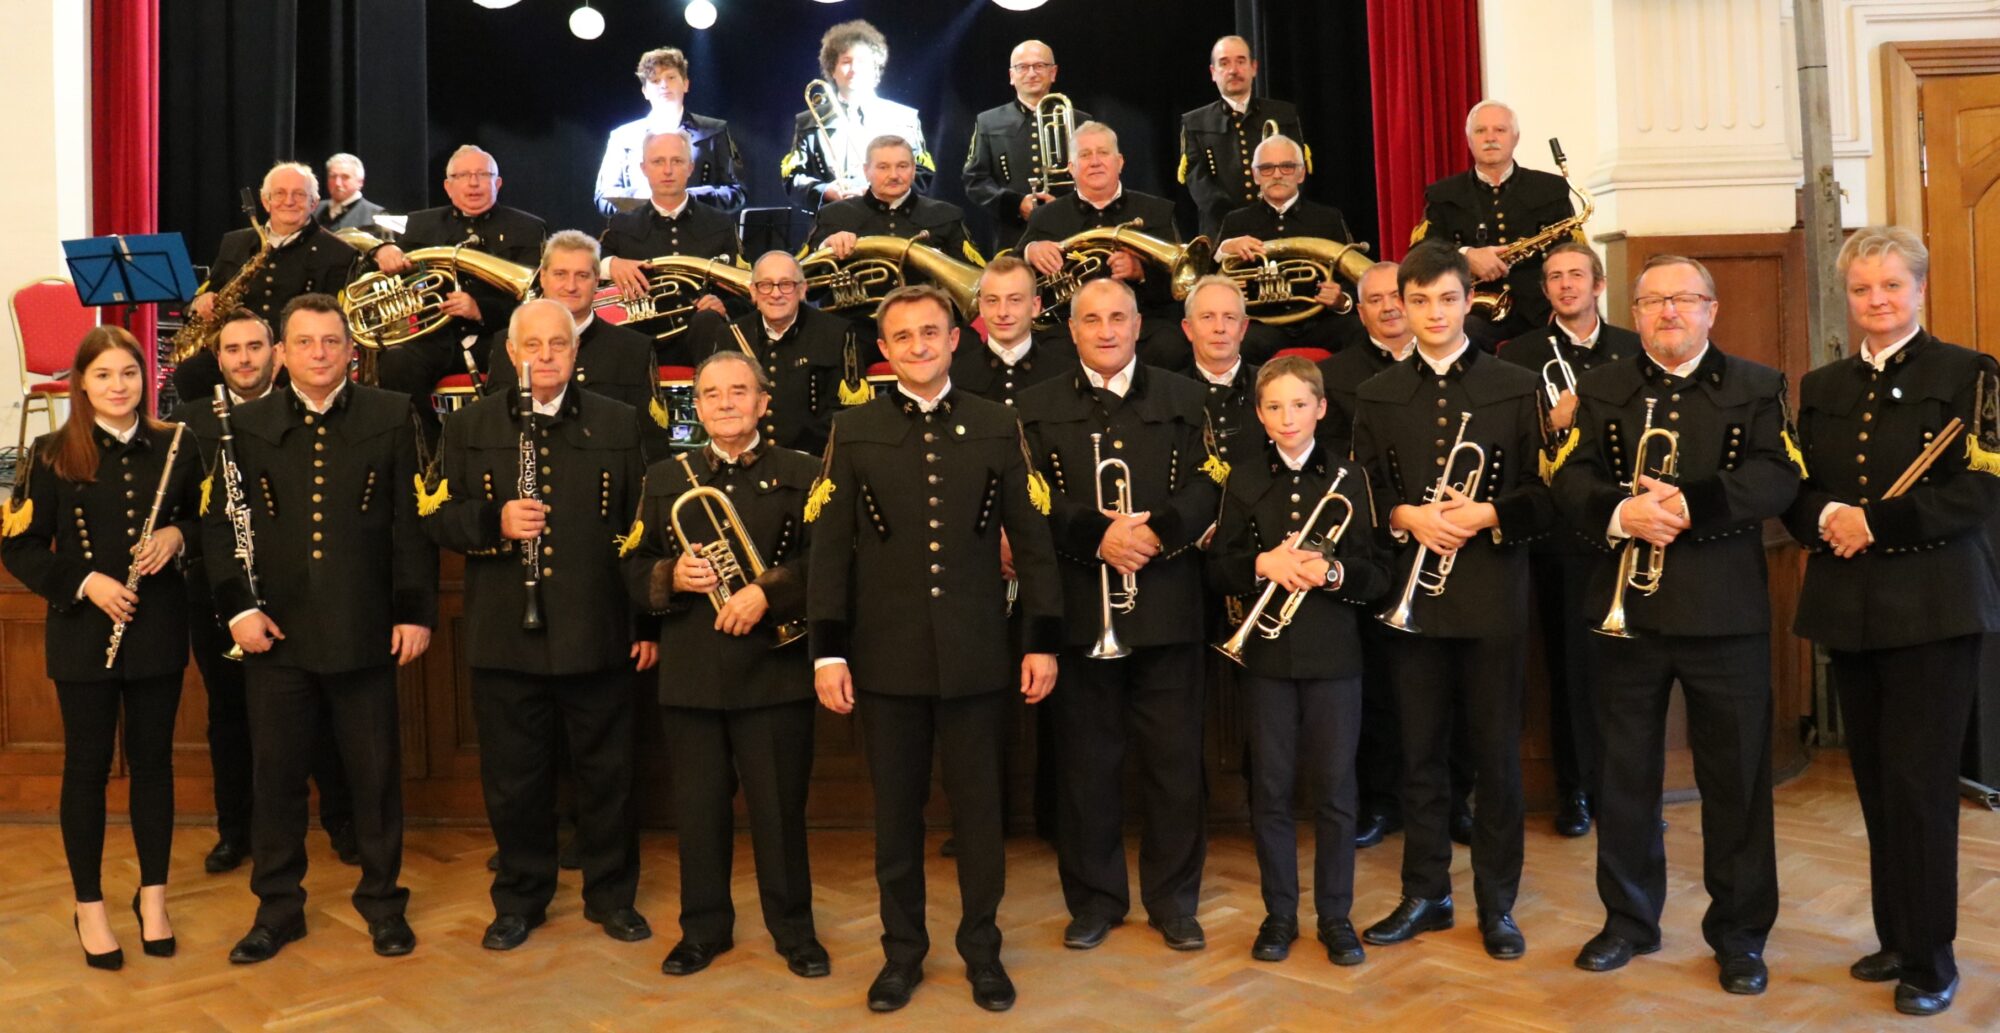 Na zdjęciu Chorzowski Brass Band stoi w strojach górniczych, trzymając instrumenty w rękach